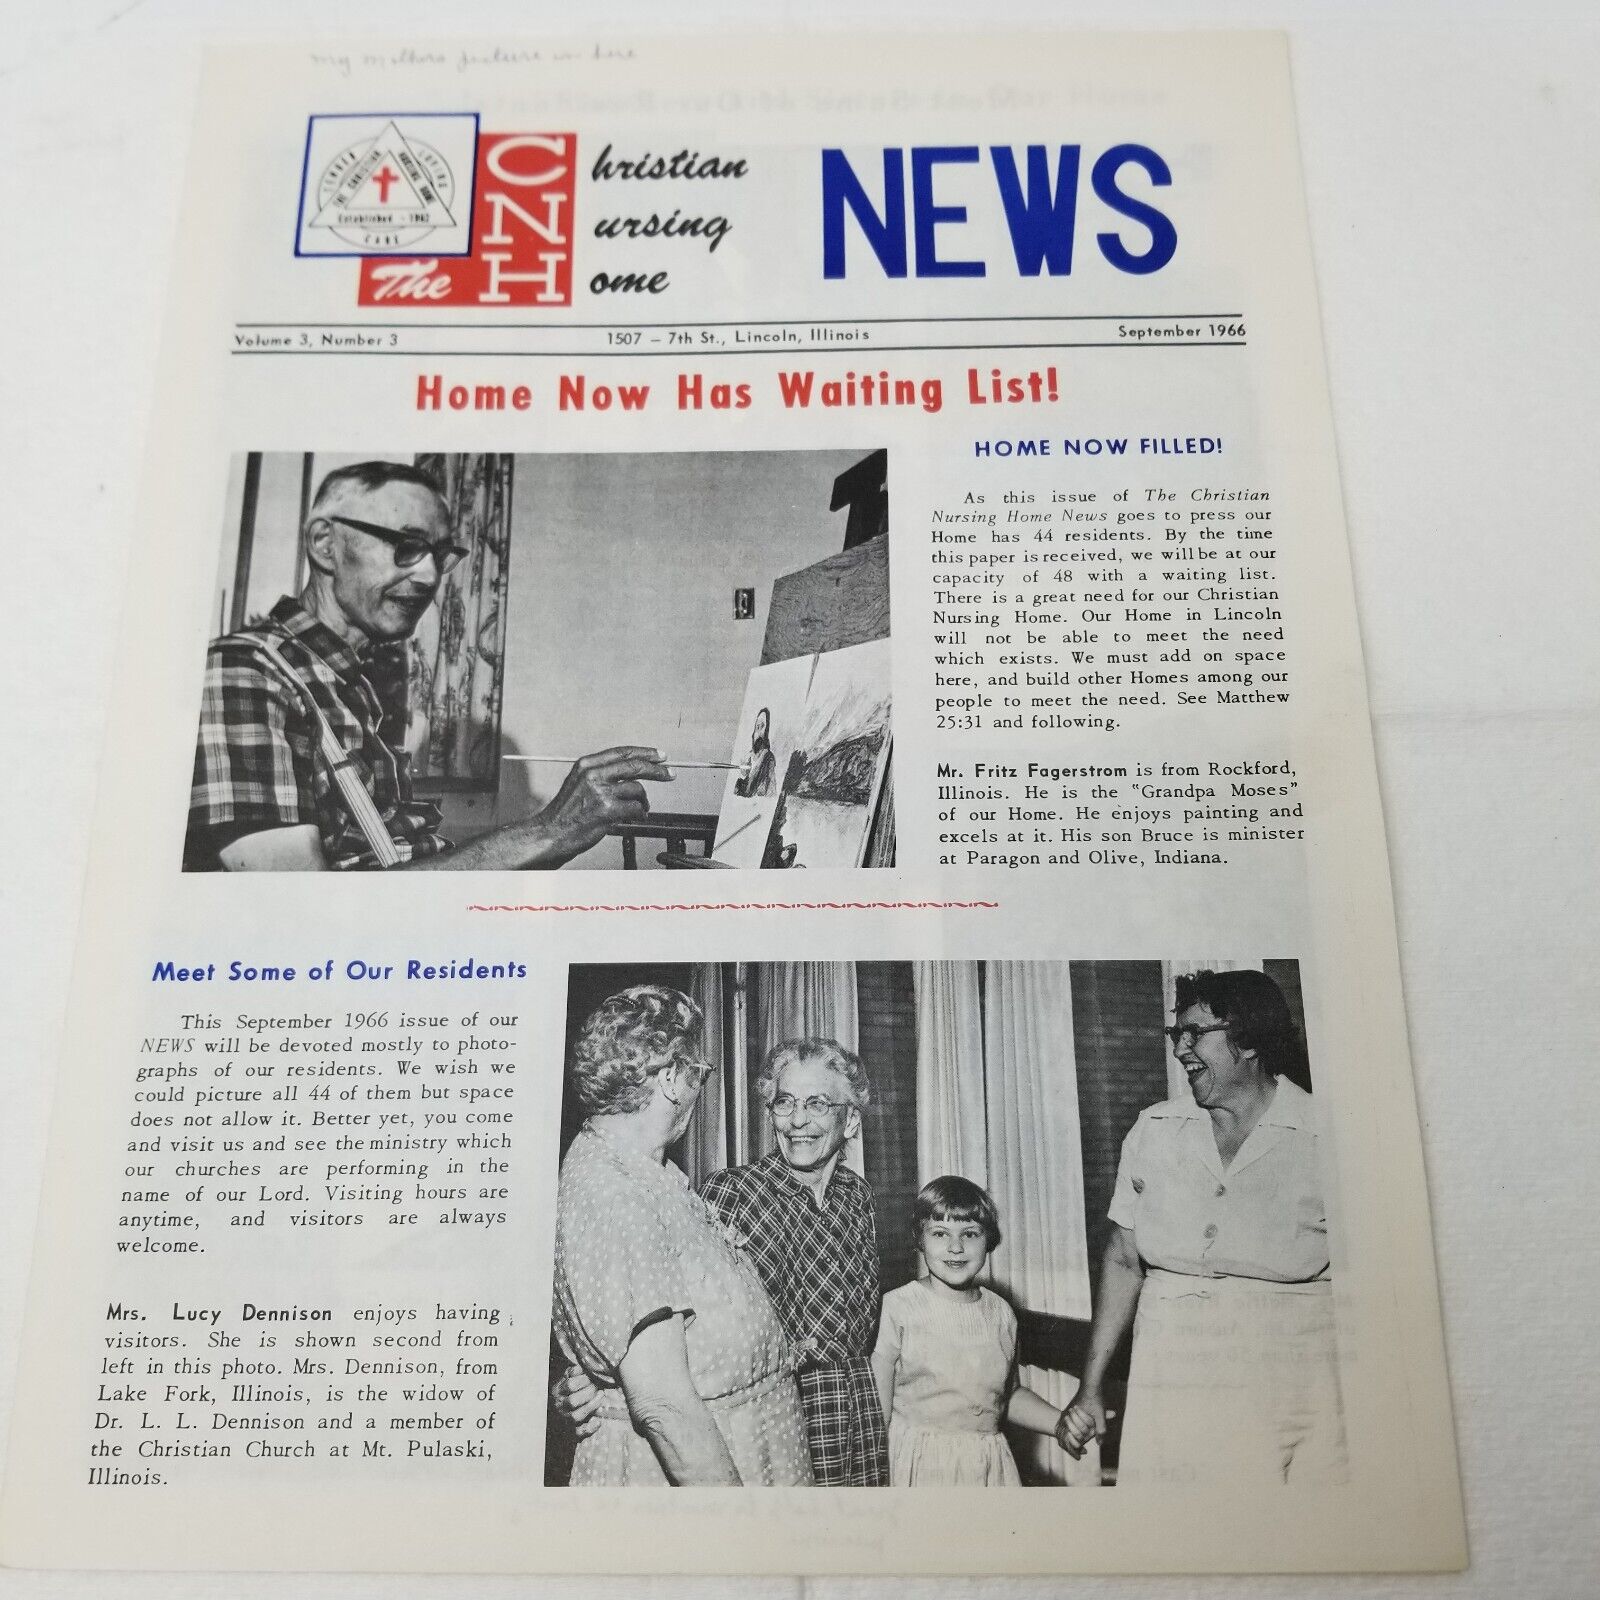 Christian Nursing Home Newsletter September 1966 Joliet Illinois Waiting List